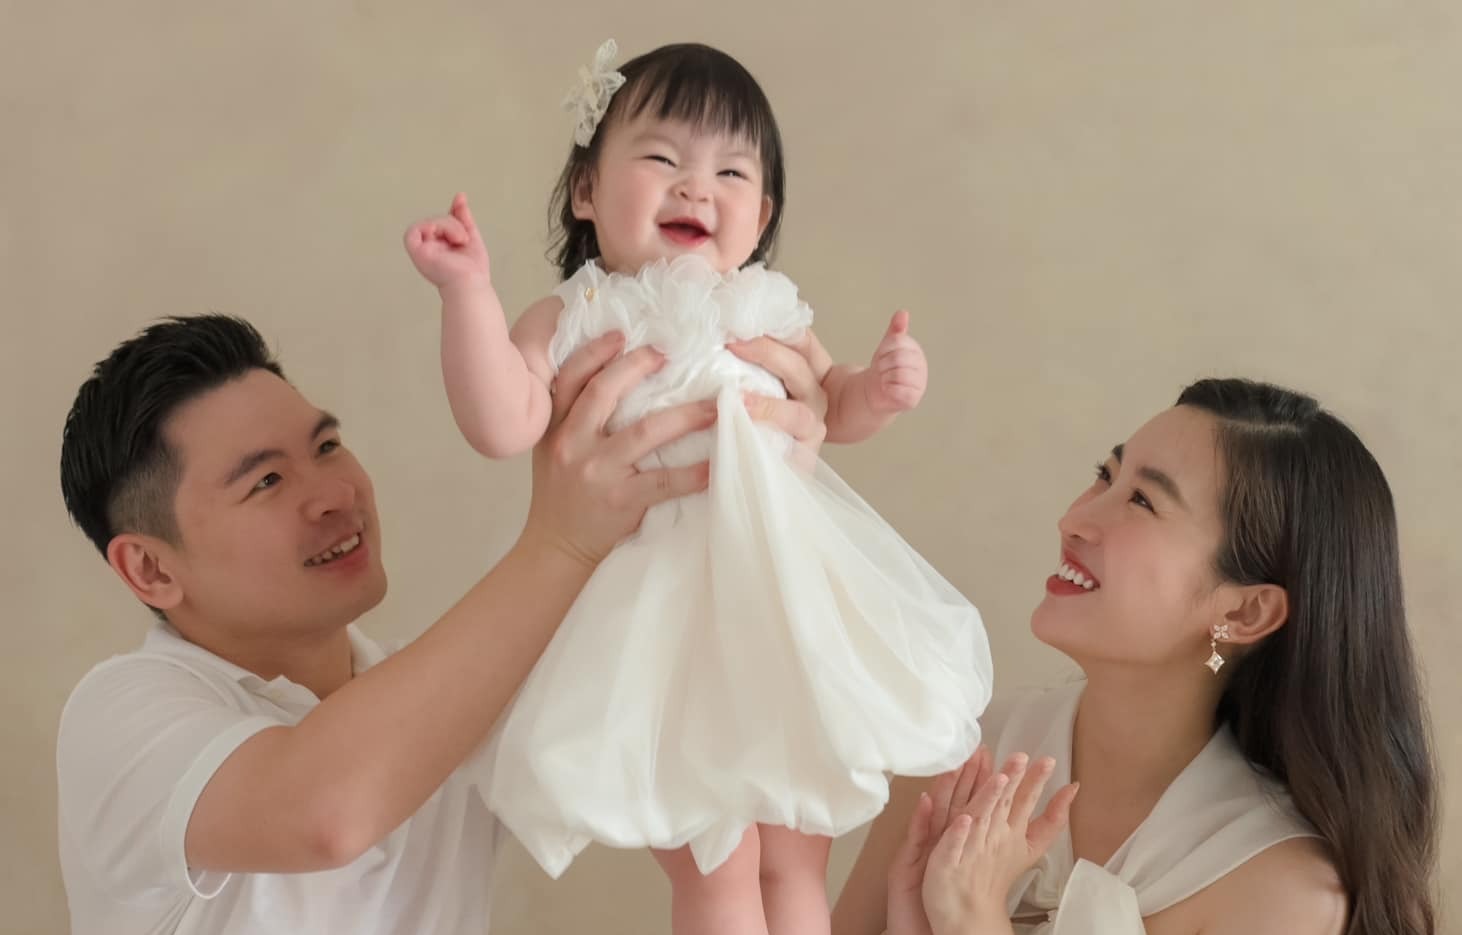 Hoa hậu Đỗ Mỹ Linh lần đầu đăng ảnh nét căng của con gái cưng, chứng minh cháu "giống mẹ như đúc"